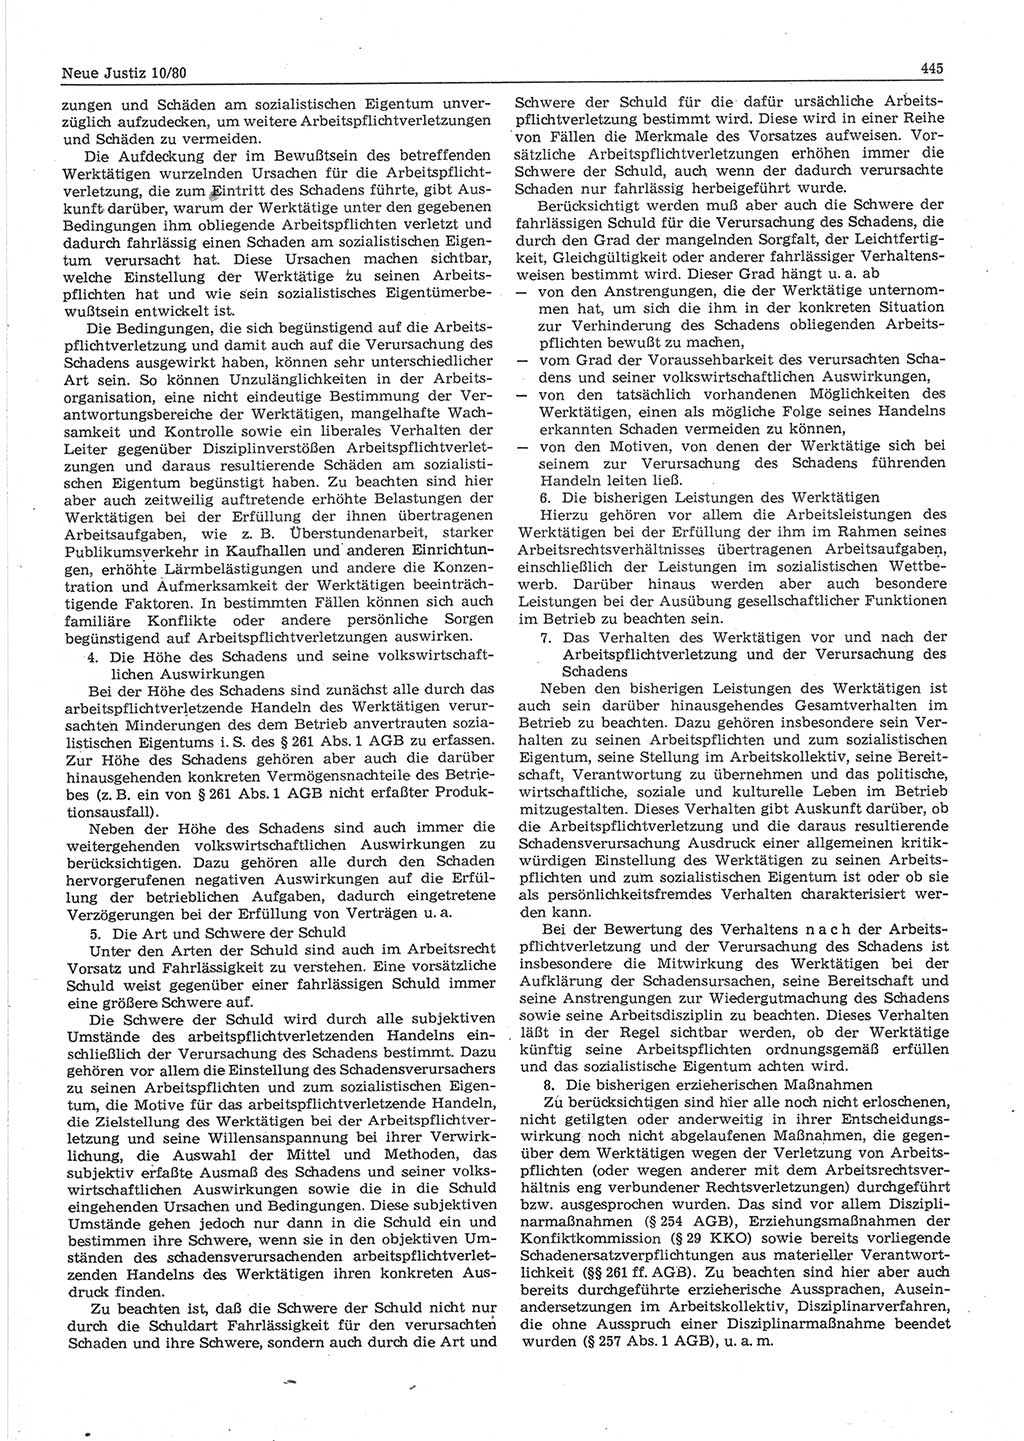 Neue Justiz (NJ), Zeitschrift für sozialistisches Recht und Gesetzlichkeit [Deutsche Demokratische Republik (DDR)], 34. Jahrgang 1980, Seite 445 (NJ DDR 1980, S. 445)